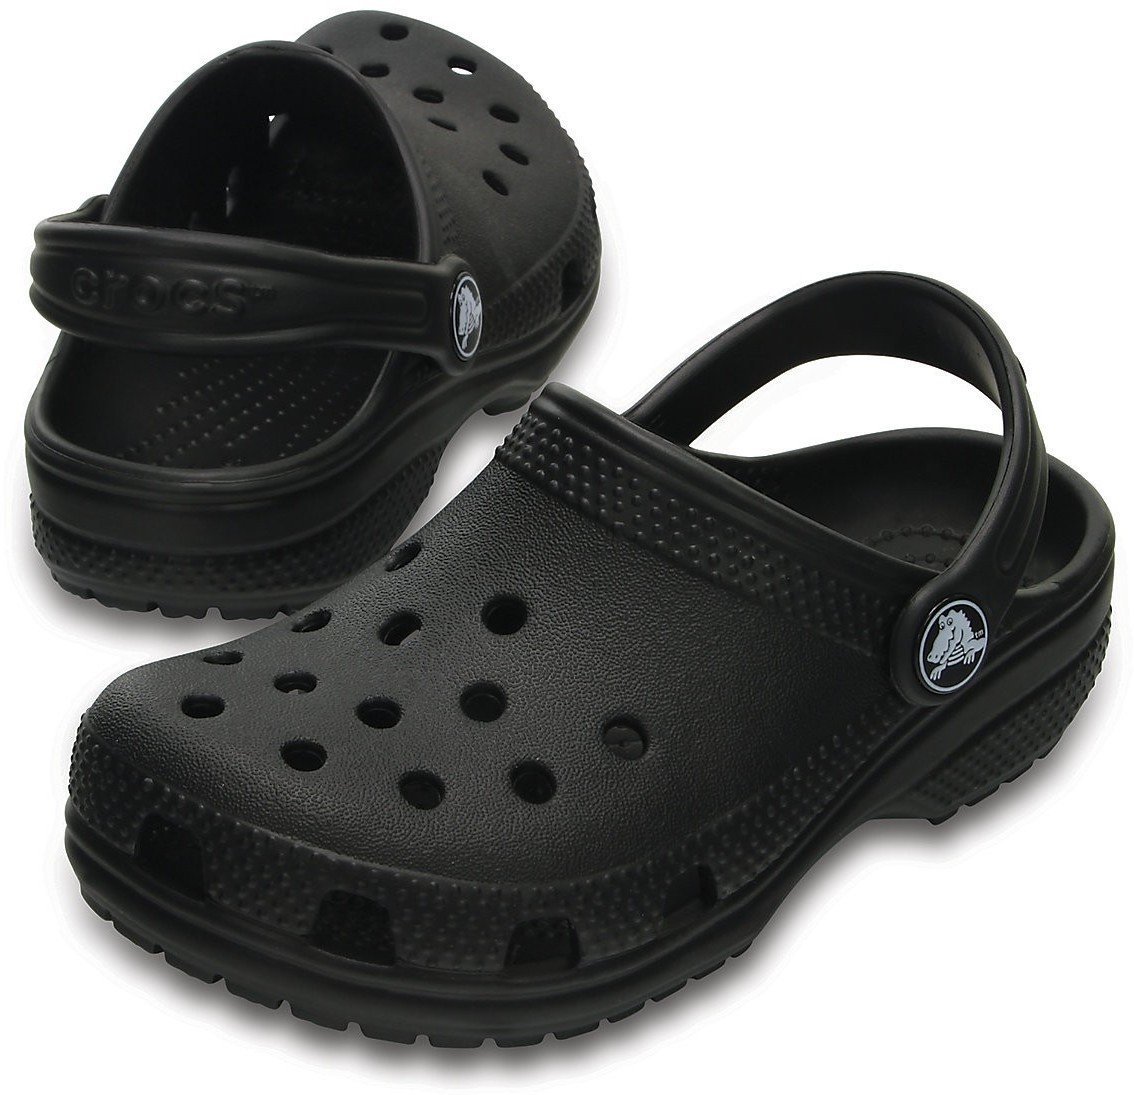 Jachtařská obuv Crocs Kids' Classic Clog Black 33-34